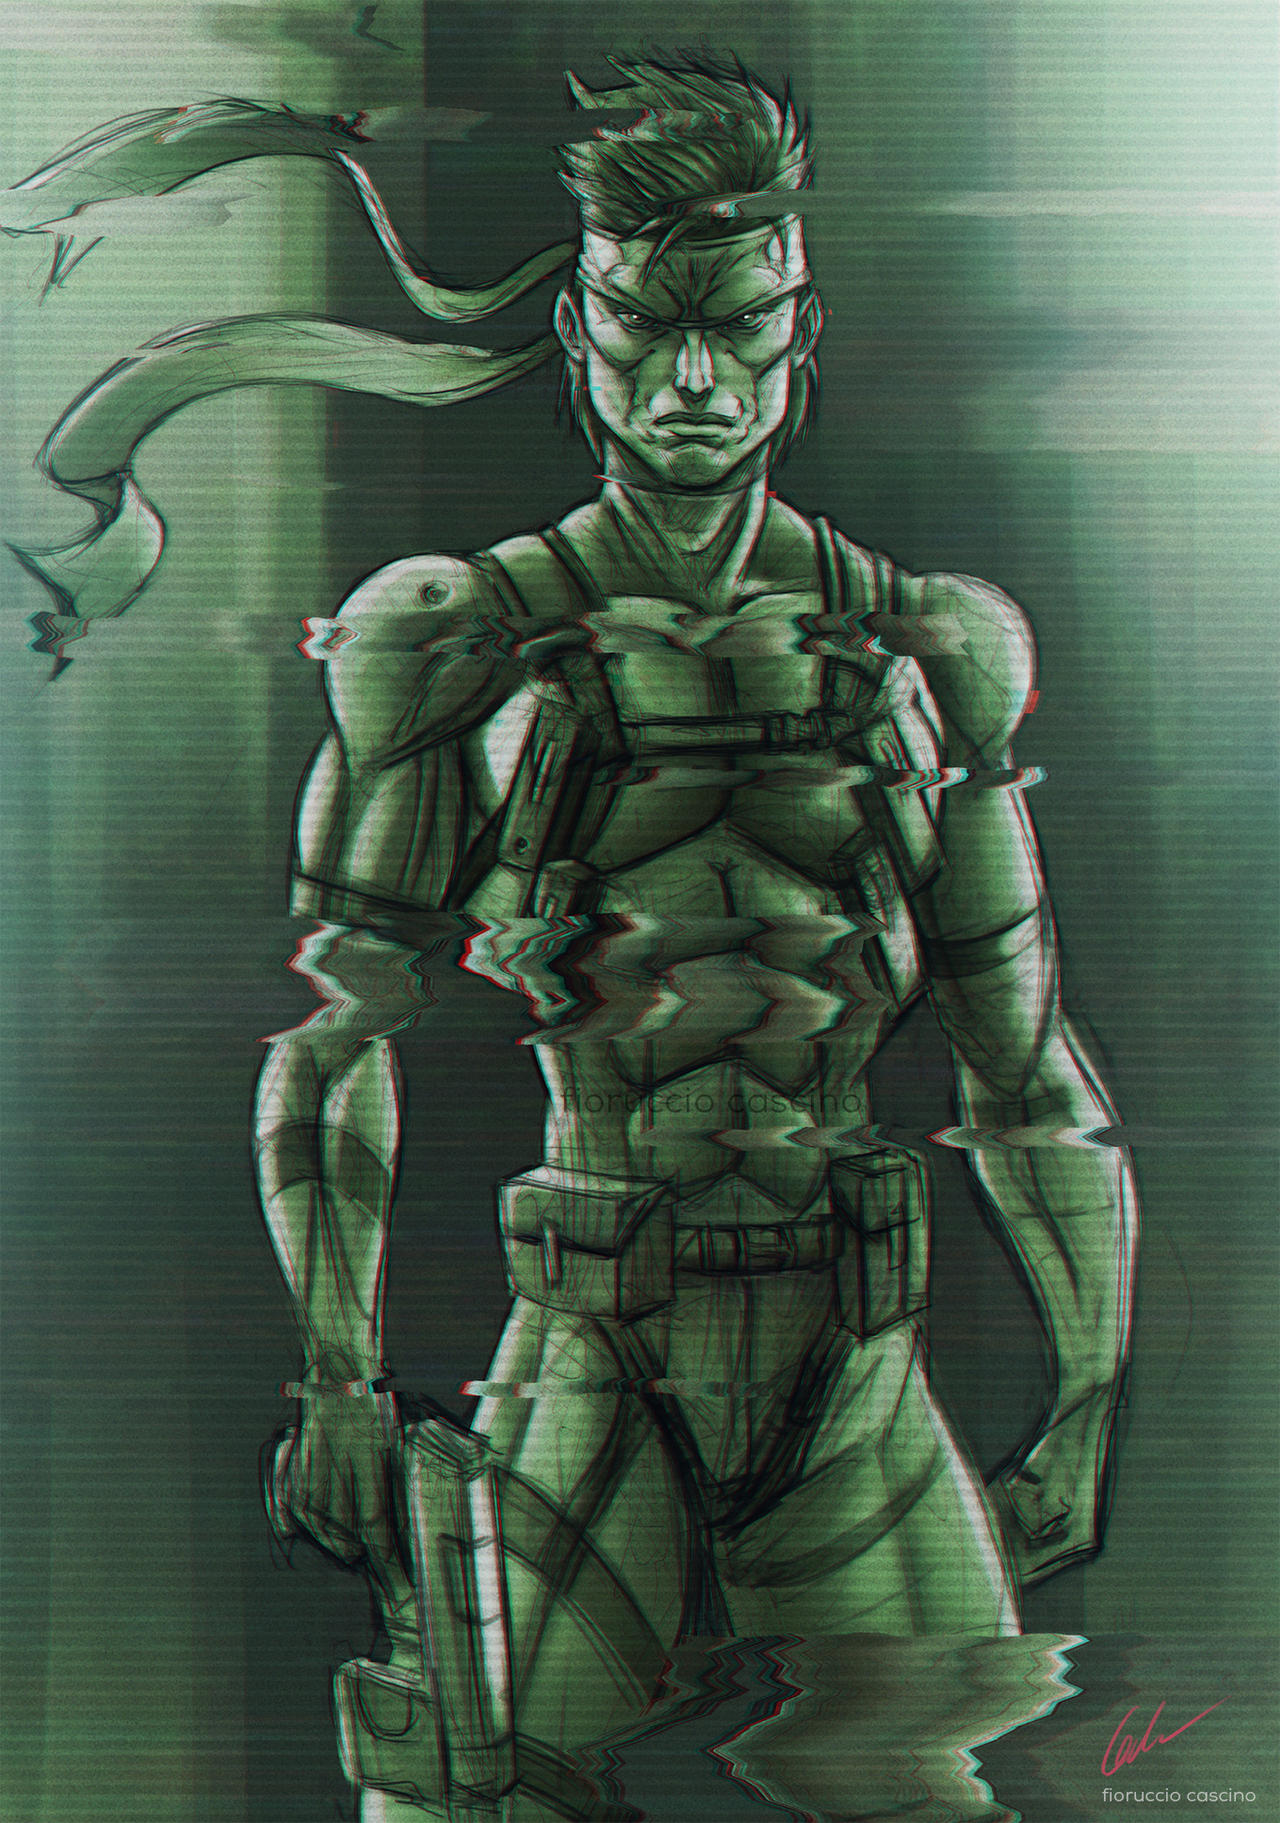 Fan Art] Solid Snake. : r/metalgearsolid